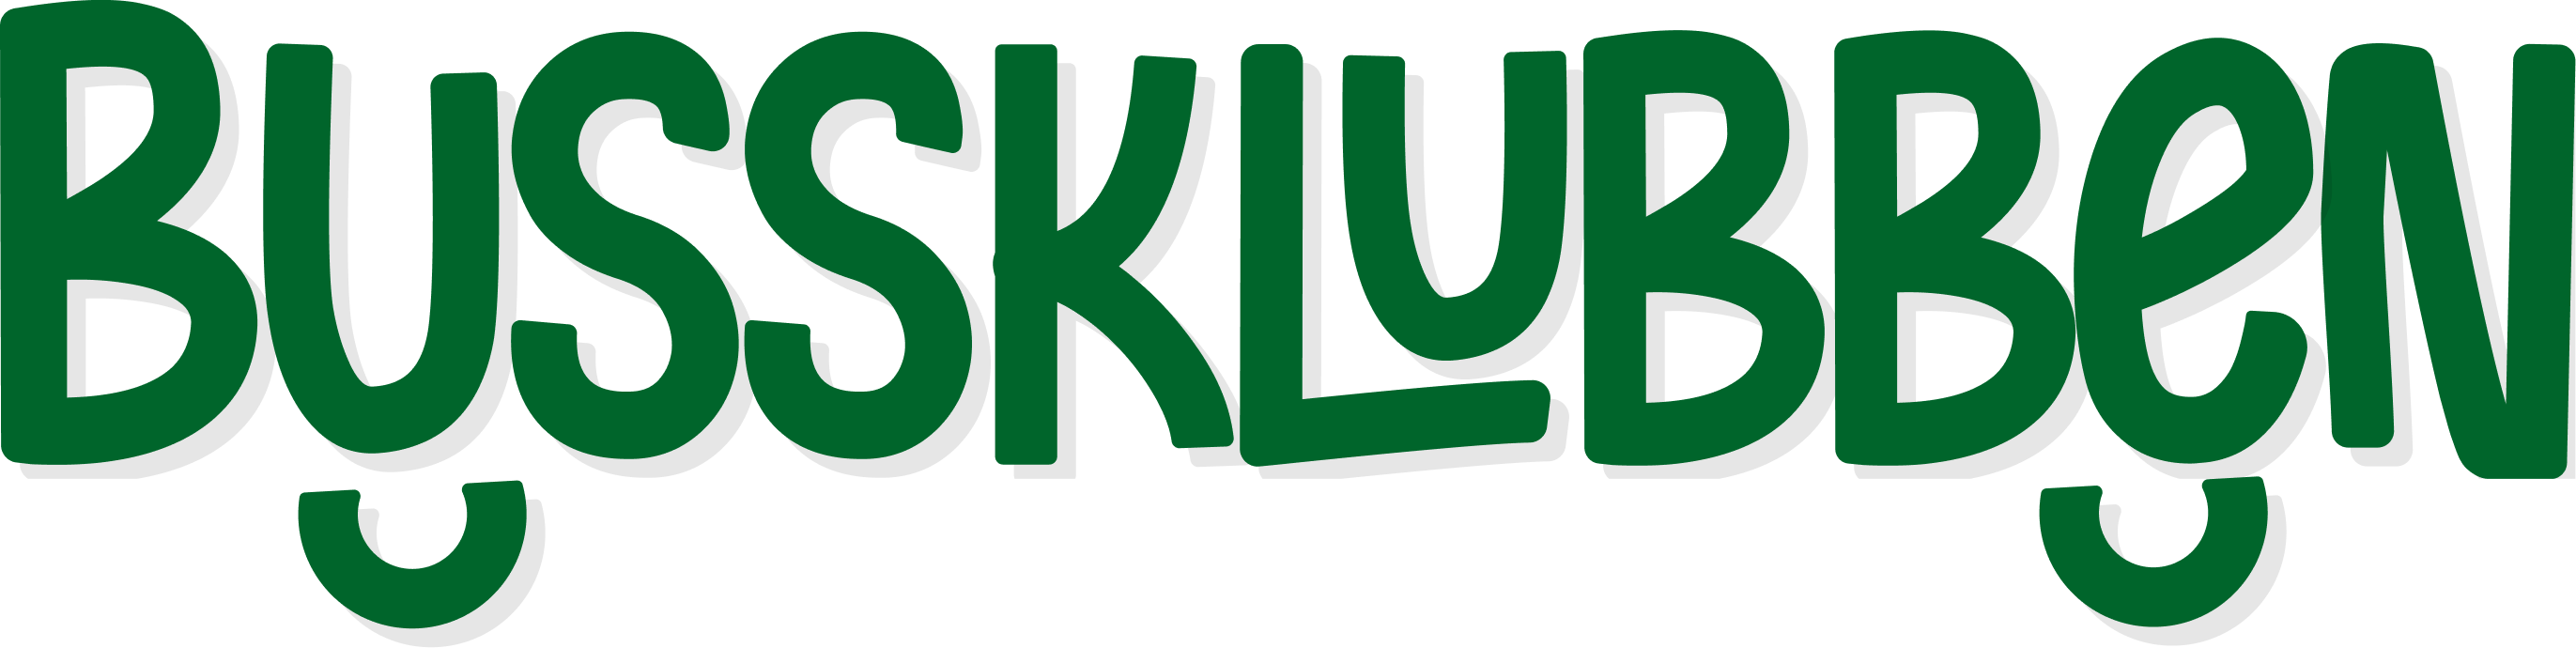 Logotyp på bussklubben